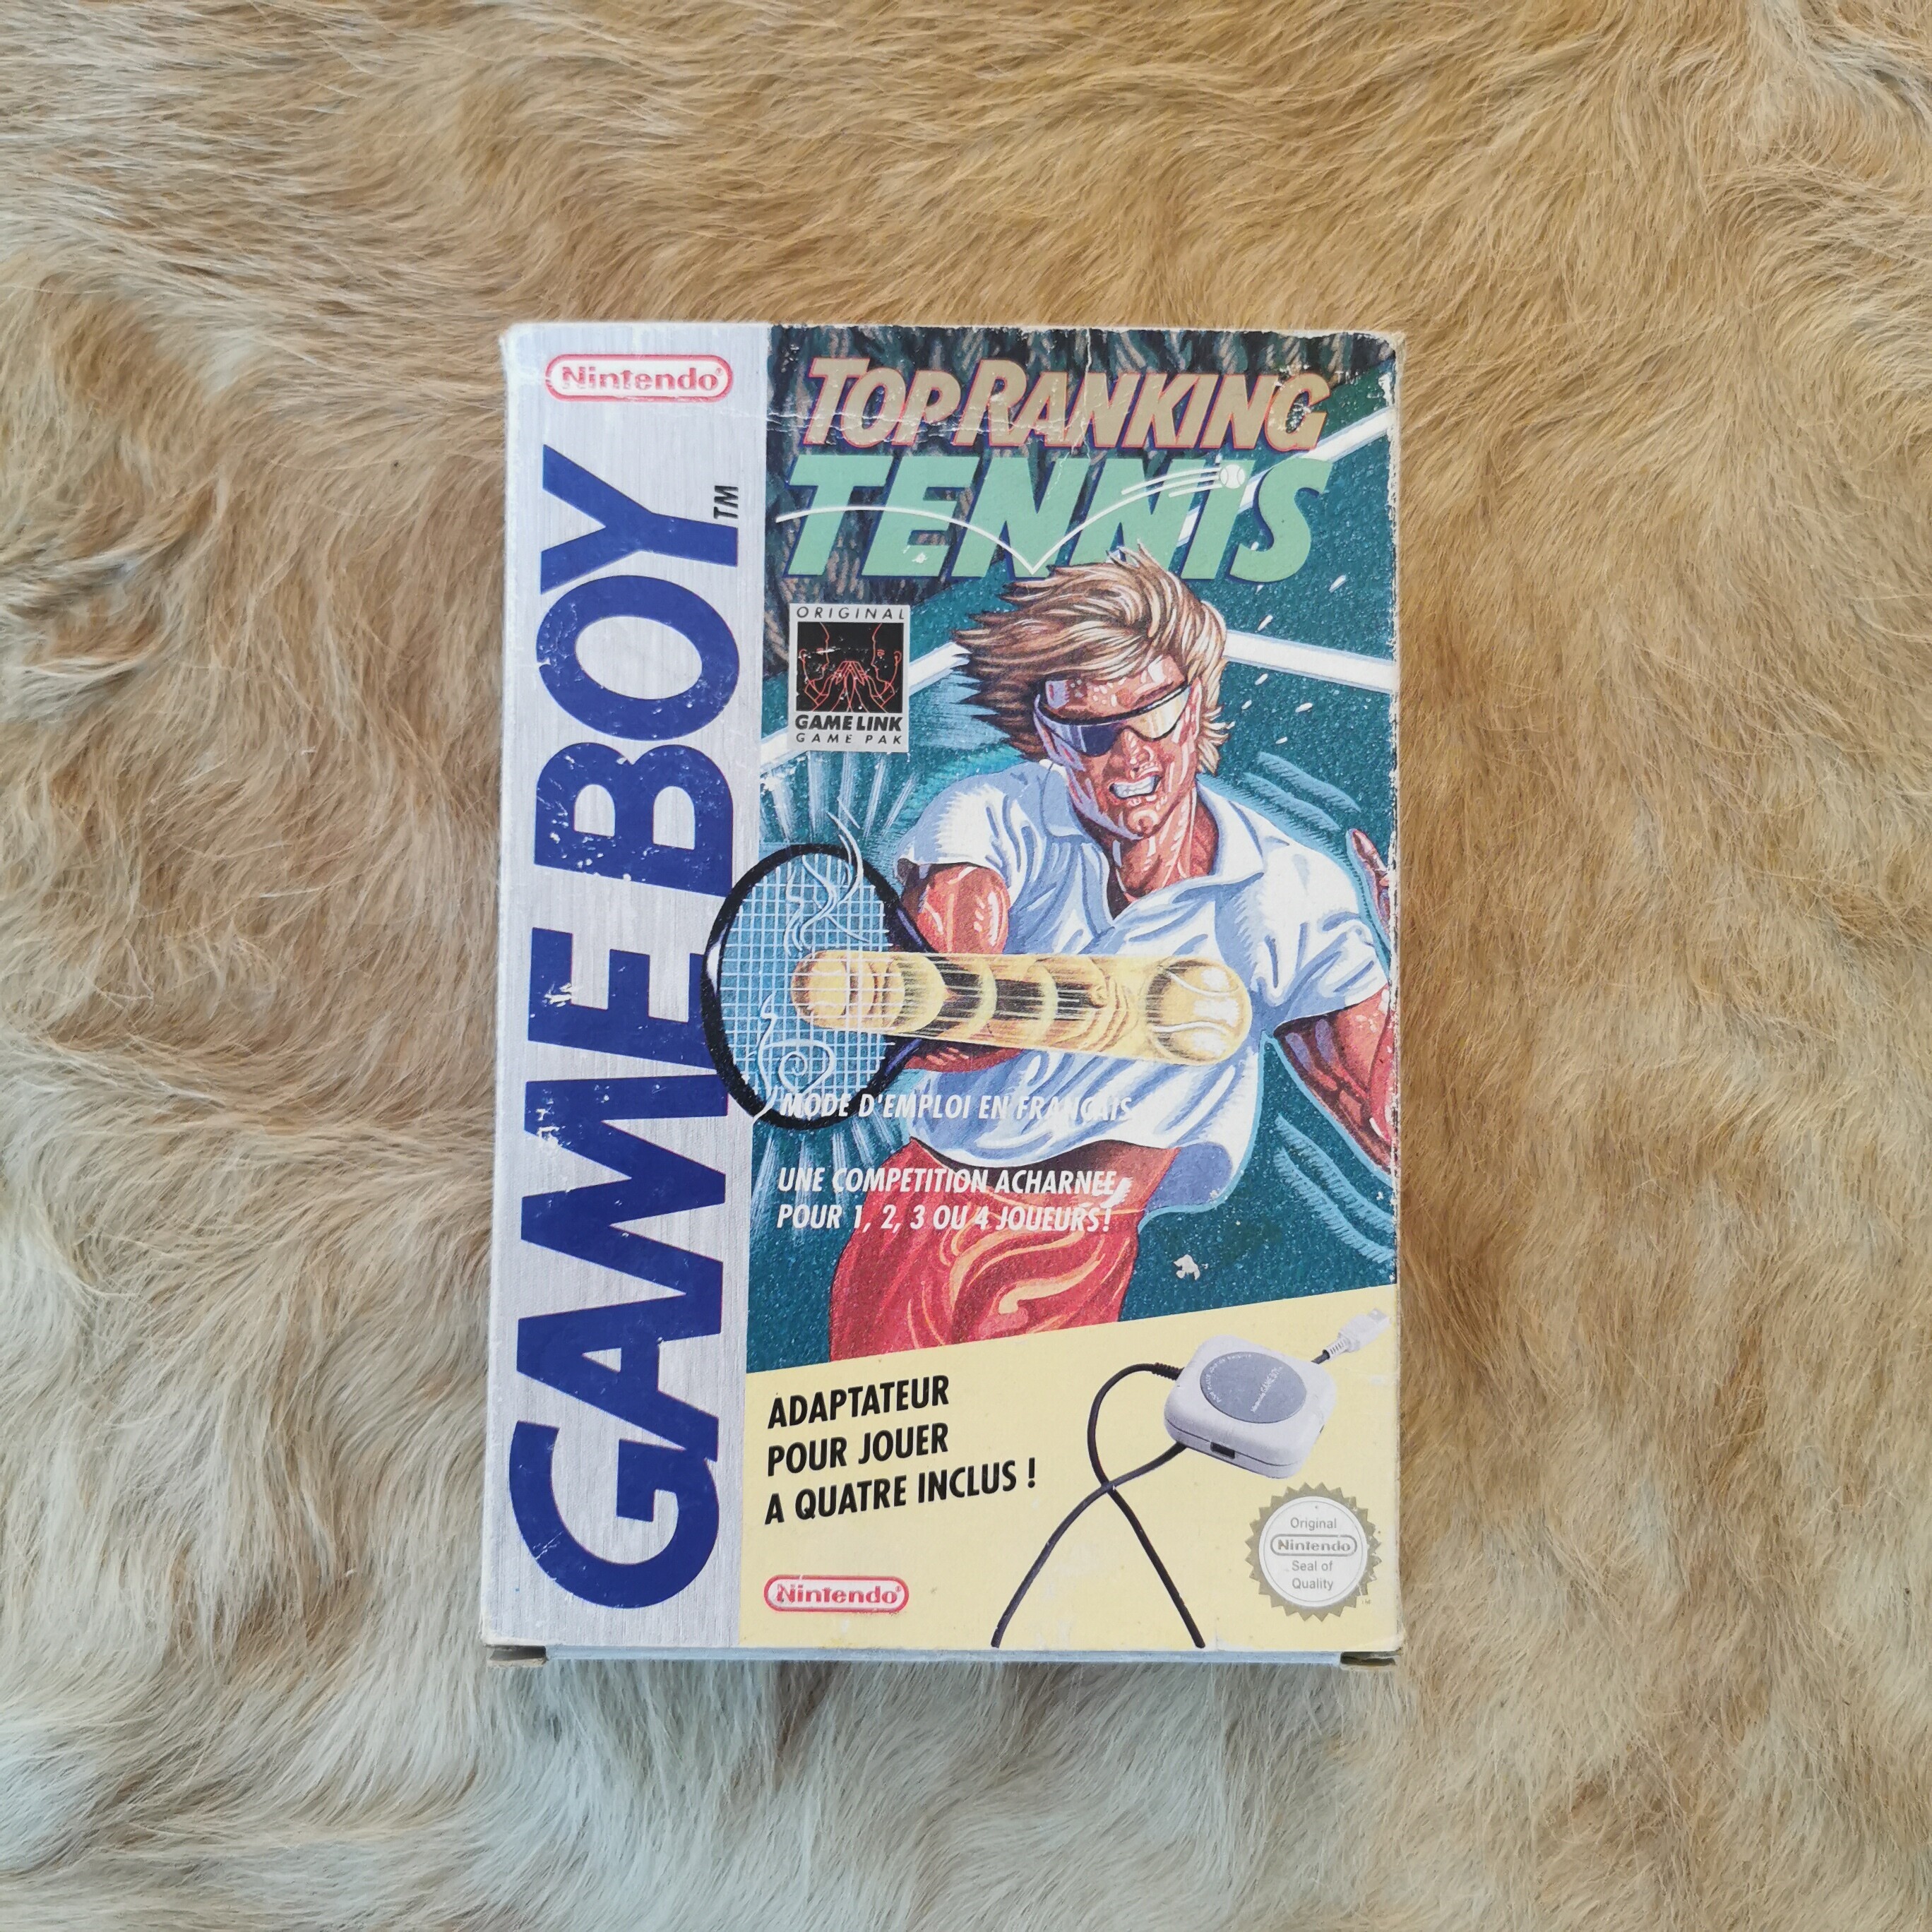  Nintendo Game Boy 4-Player Adapter + Top Ranking™ Tennis Bundle